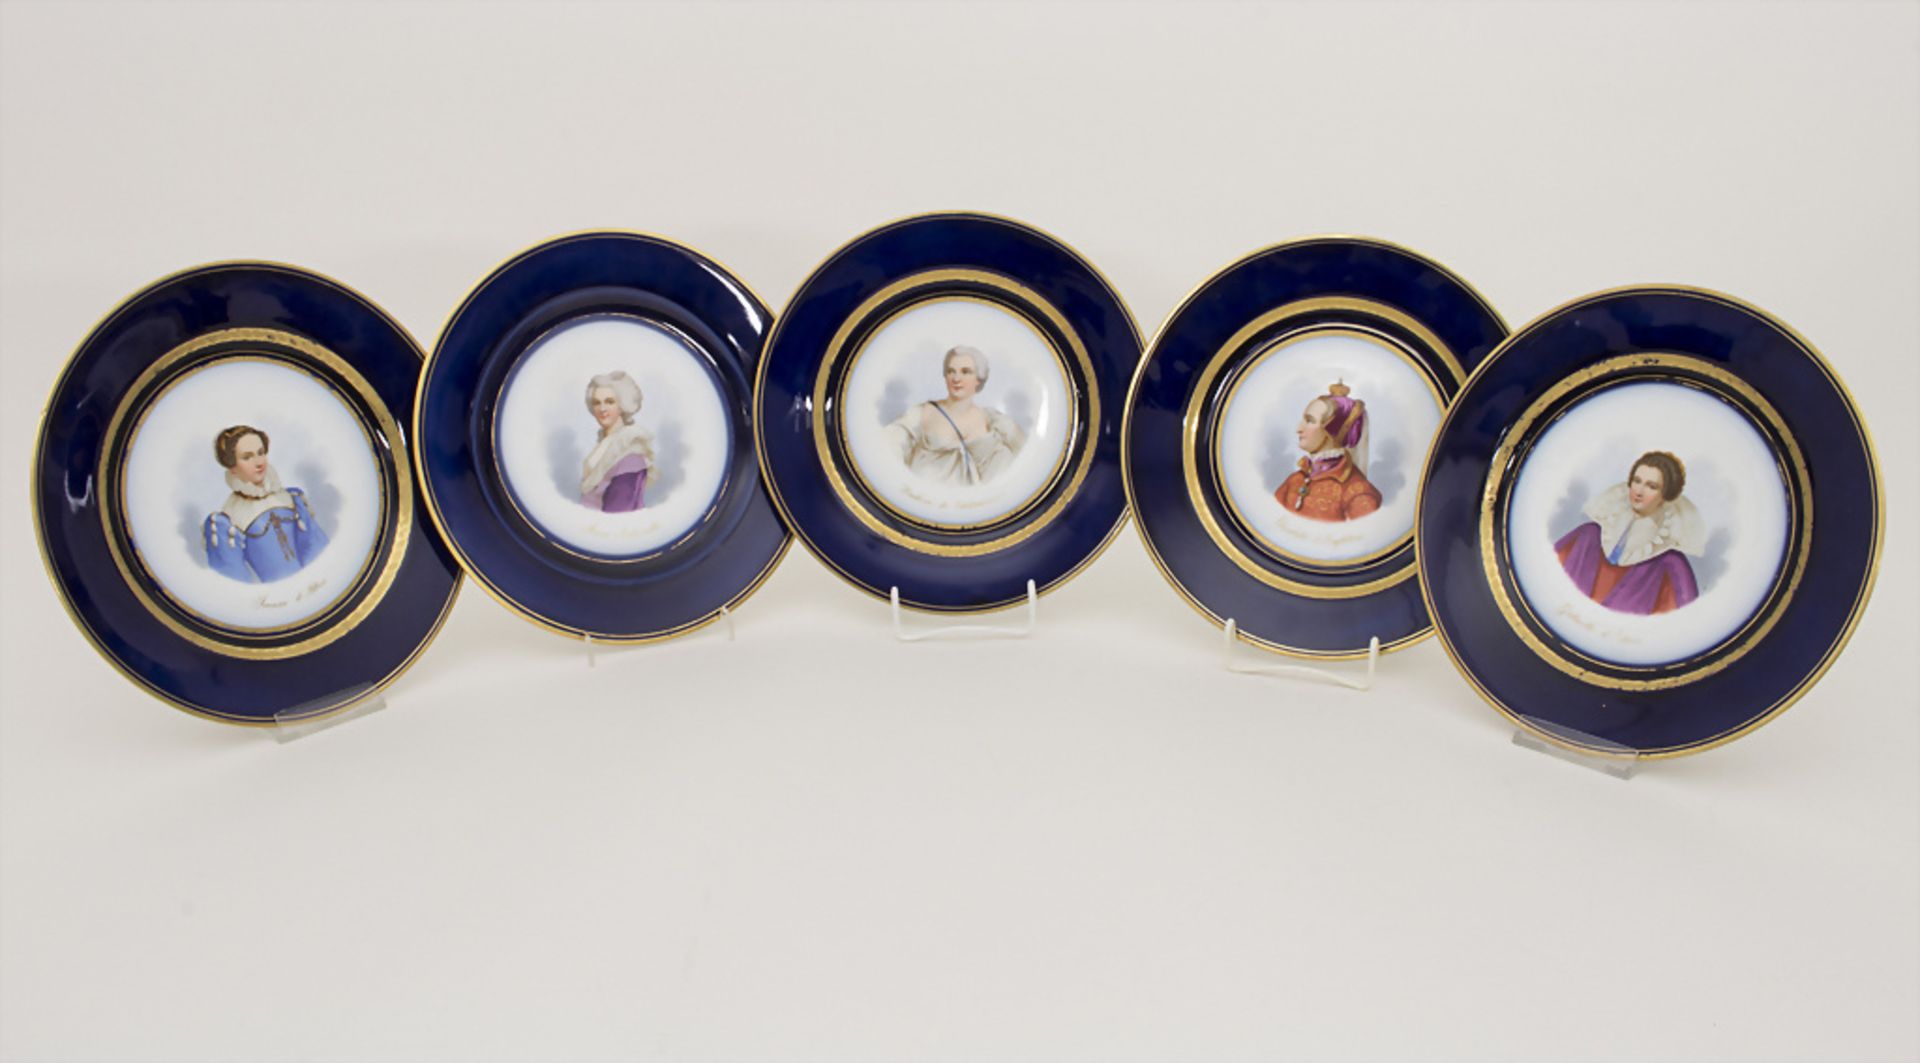 5 Teller mit Damenportraits / A set of 5 plates with ladies portaits, Sèvres, 1860-1861